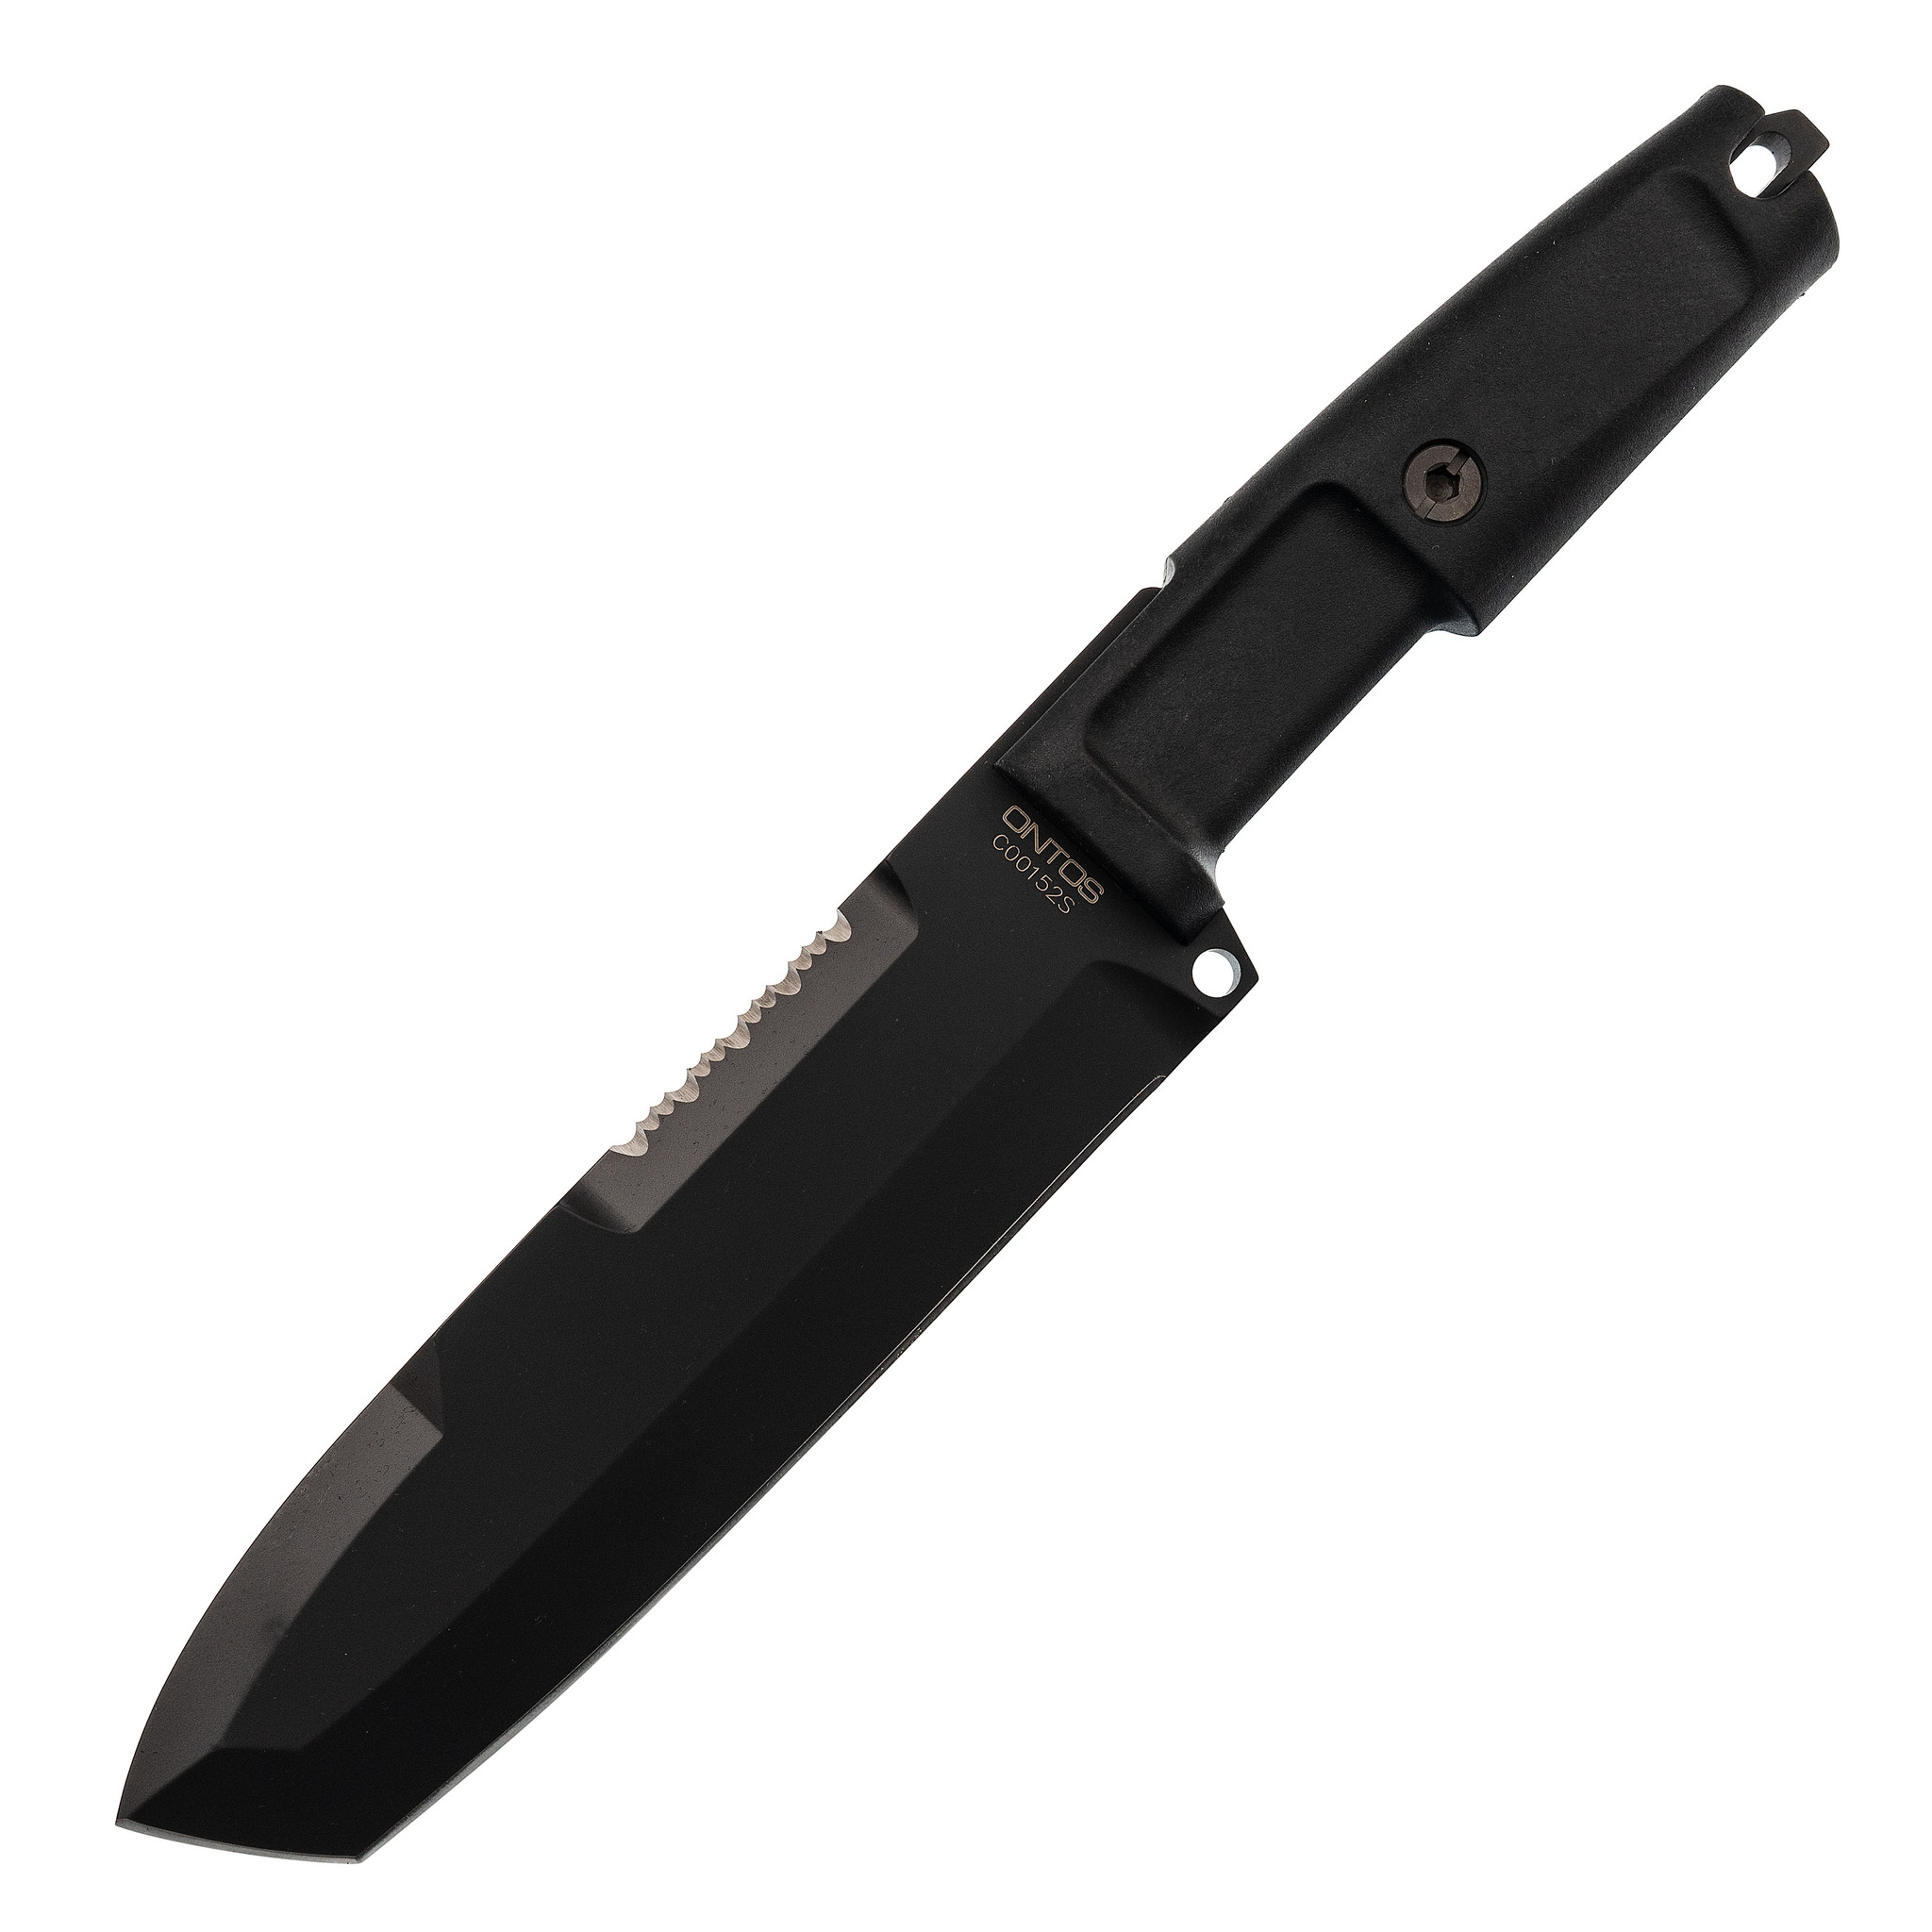 фото Нож с фиксированным клинком + набор для выживания extrema ratio ontos, black sheath (чёрный чехол), сталь bhler n690, рукоять прорезиненный форпрен